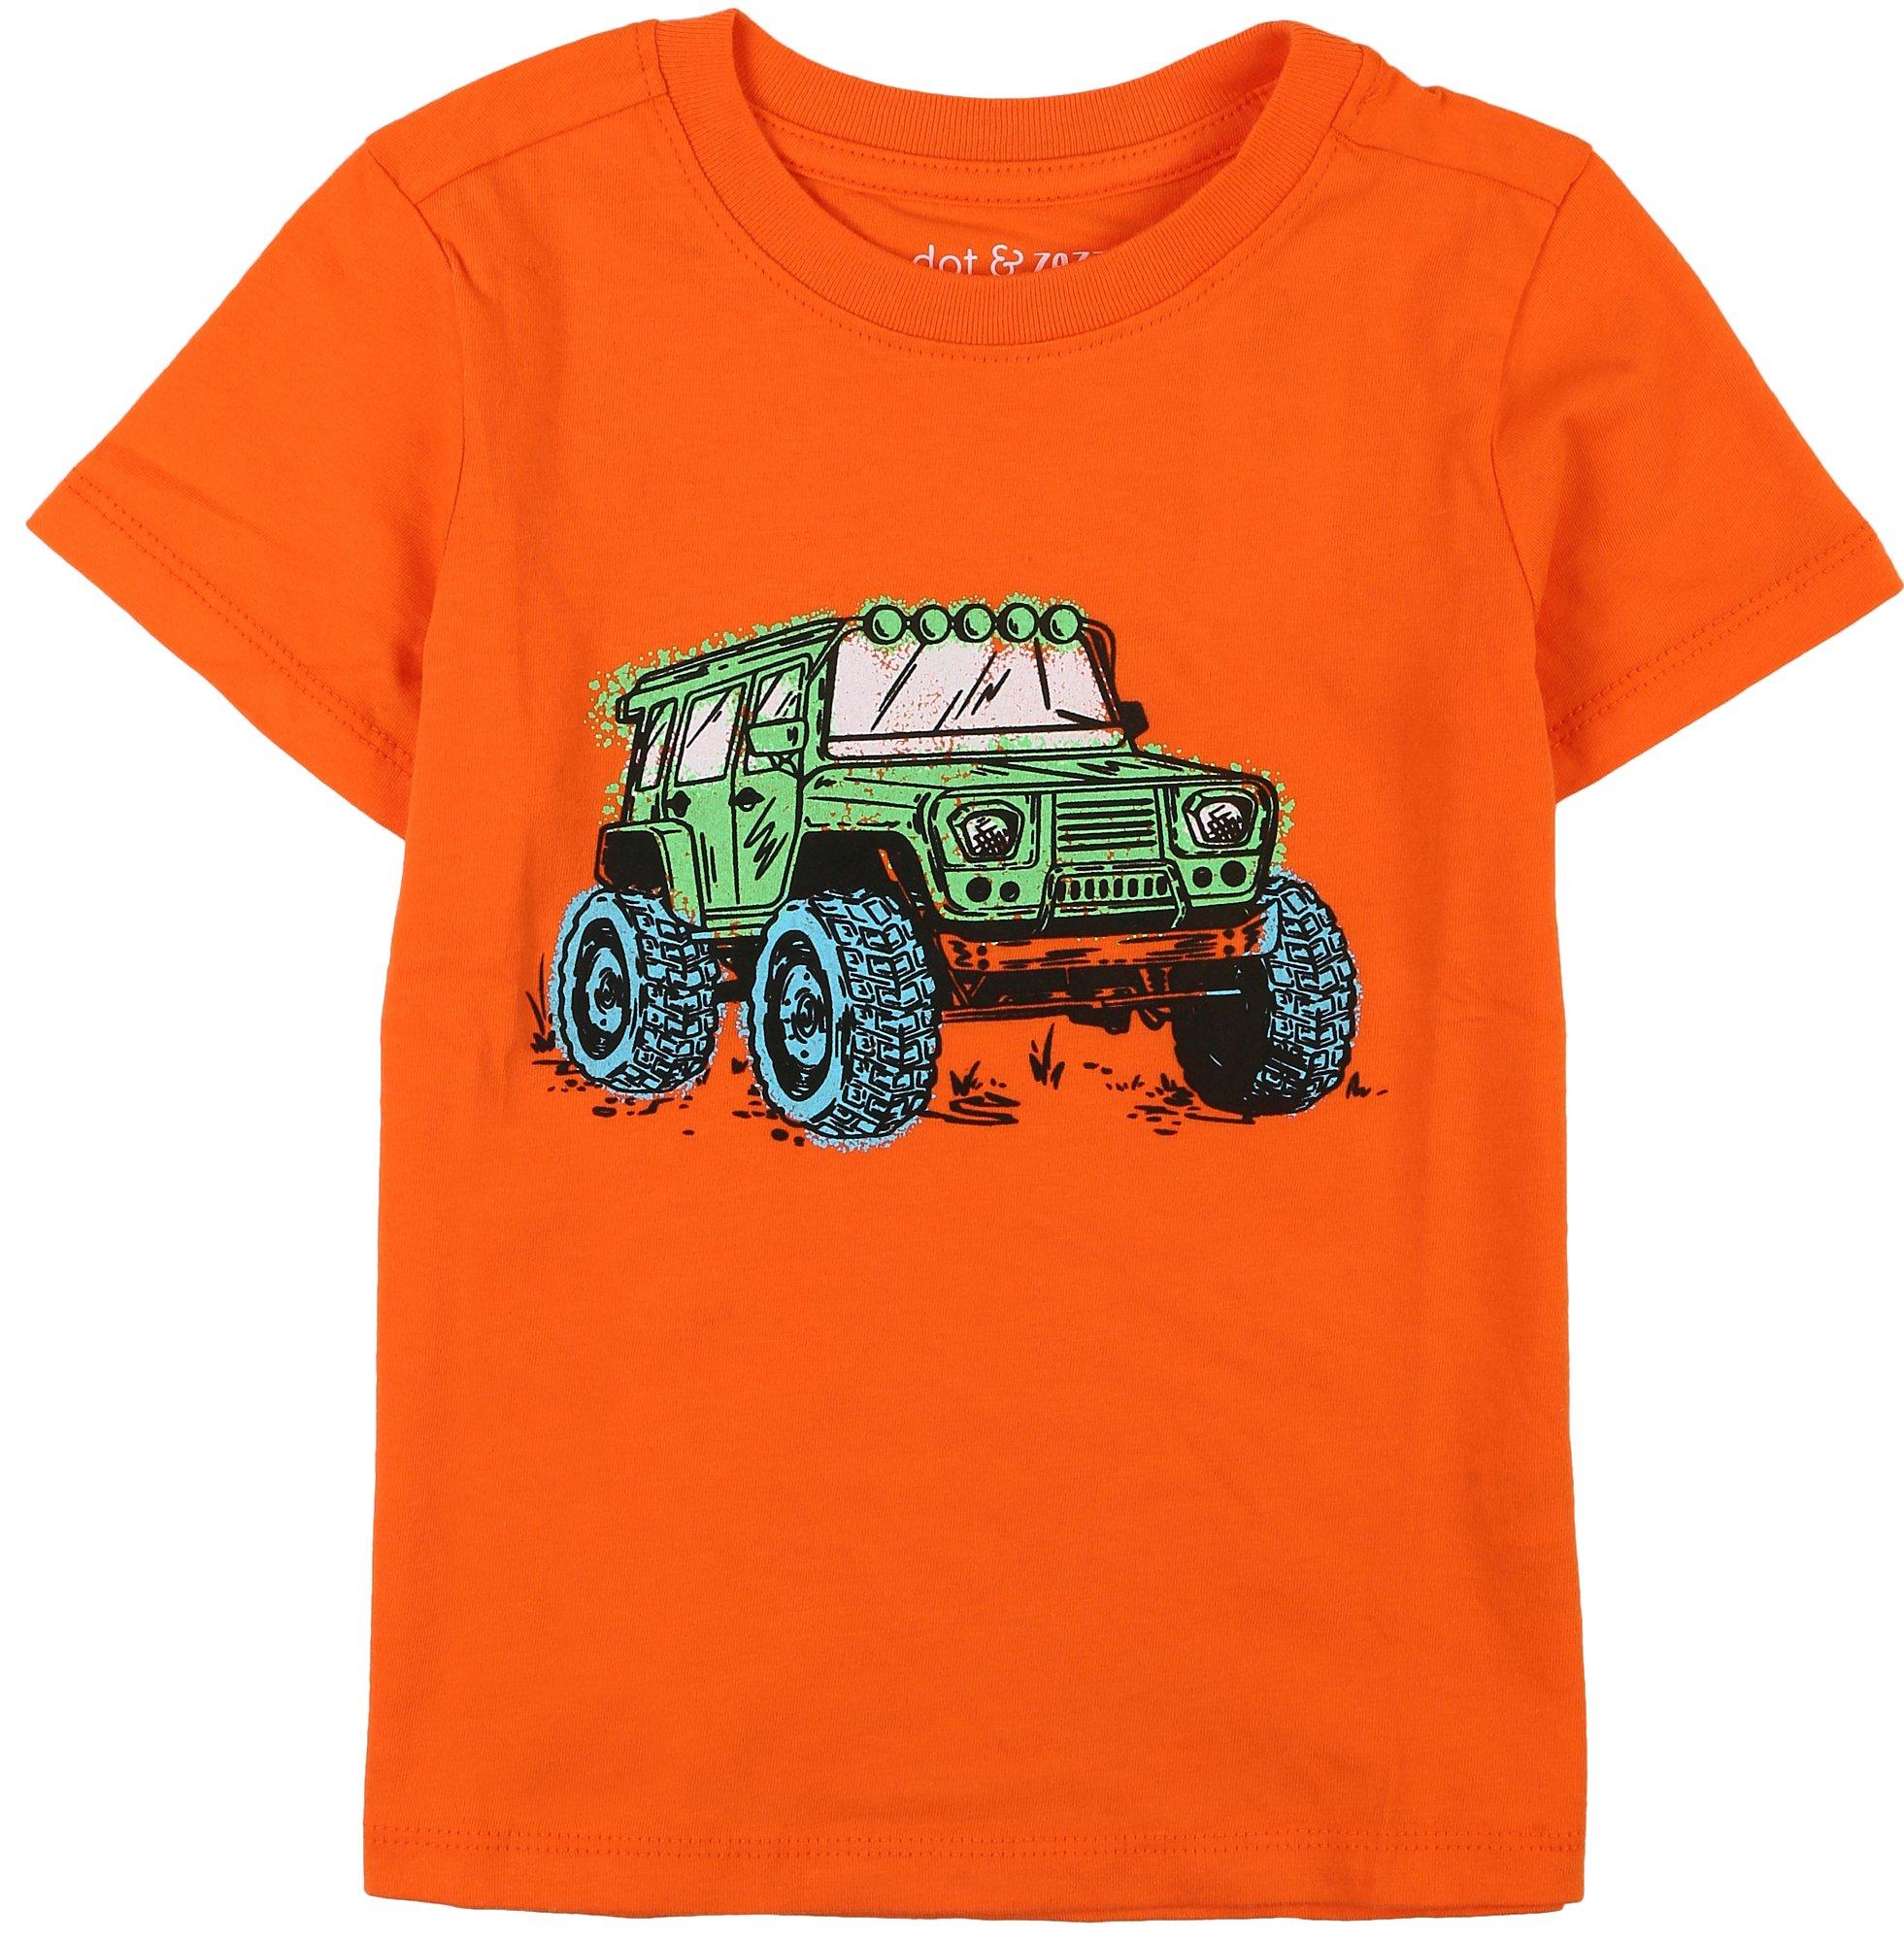 Little Boys Truck Short Sleeve T-Shirt